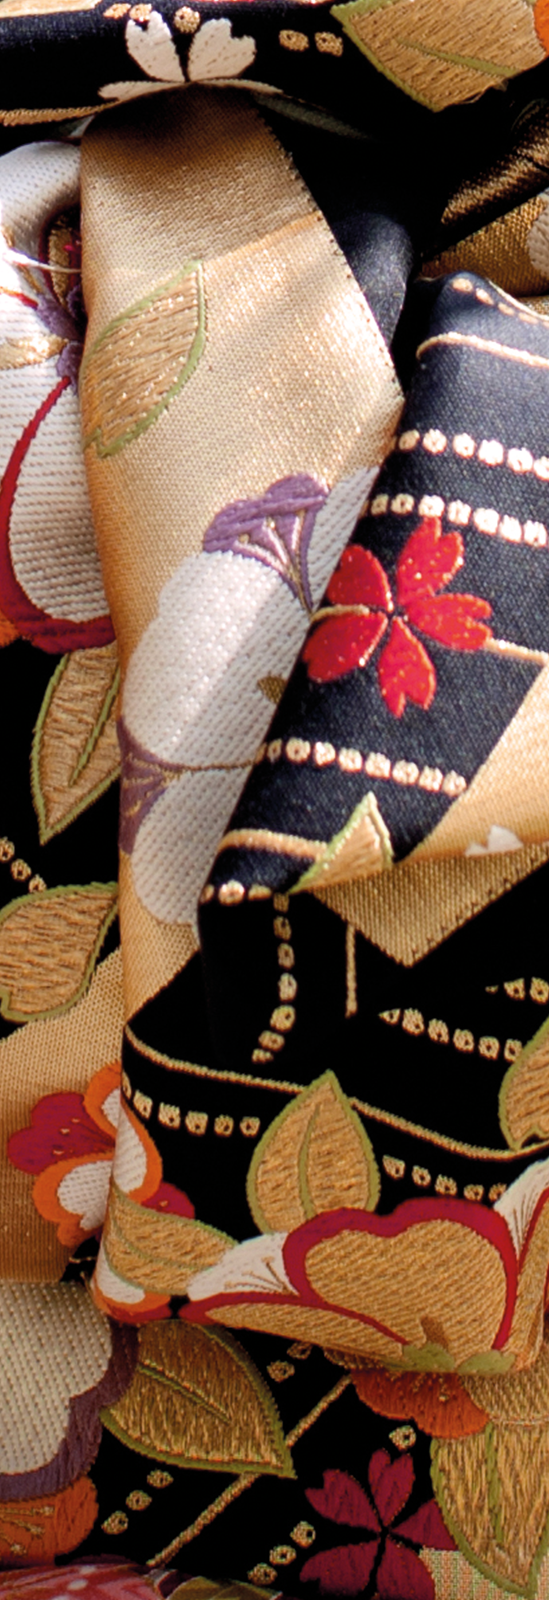 Shinsei rend hommage
au style floral et printanier
des kimonos traditionnels, brodés de précieux  fils d’or
et de soie.
